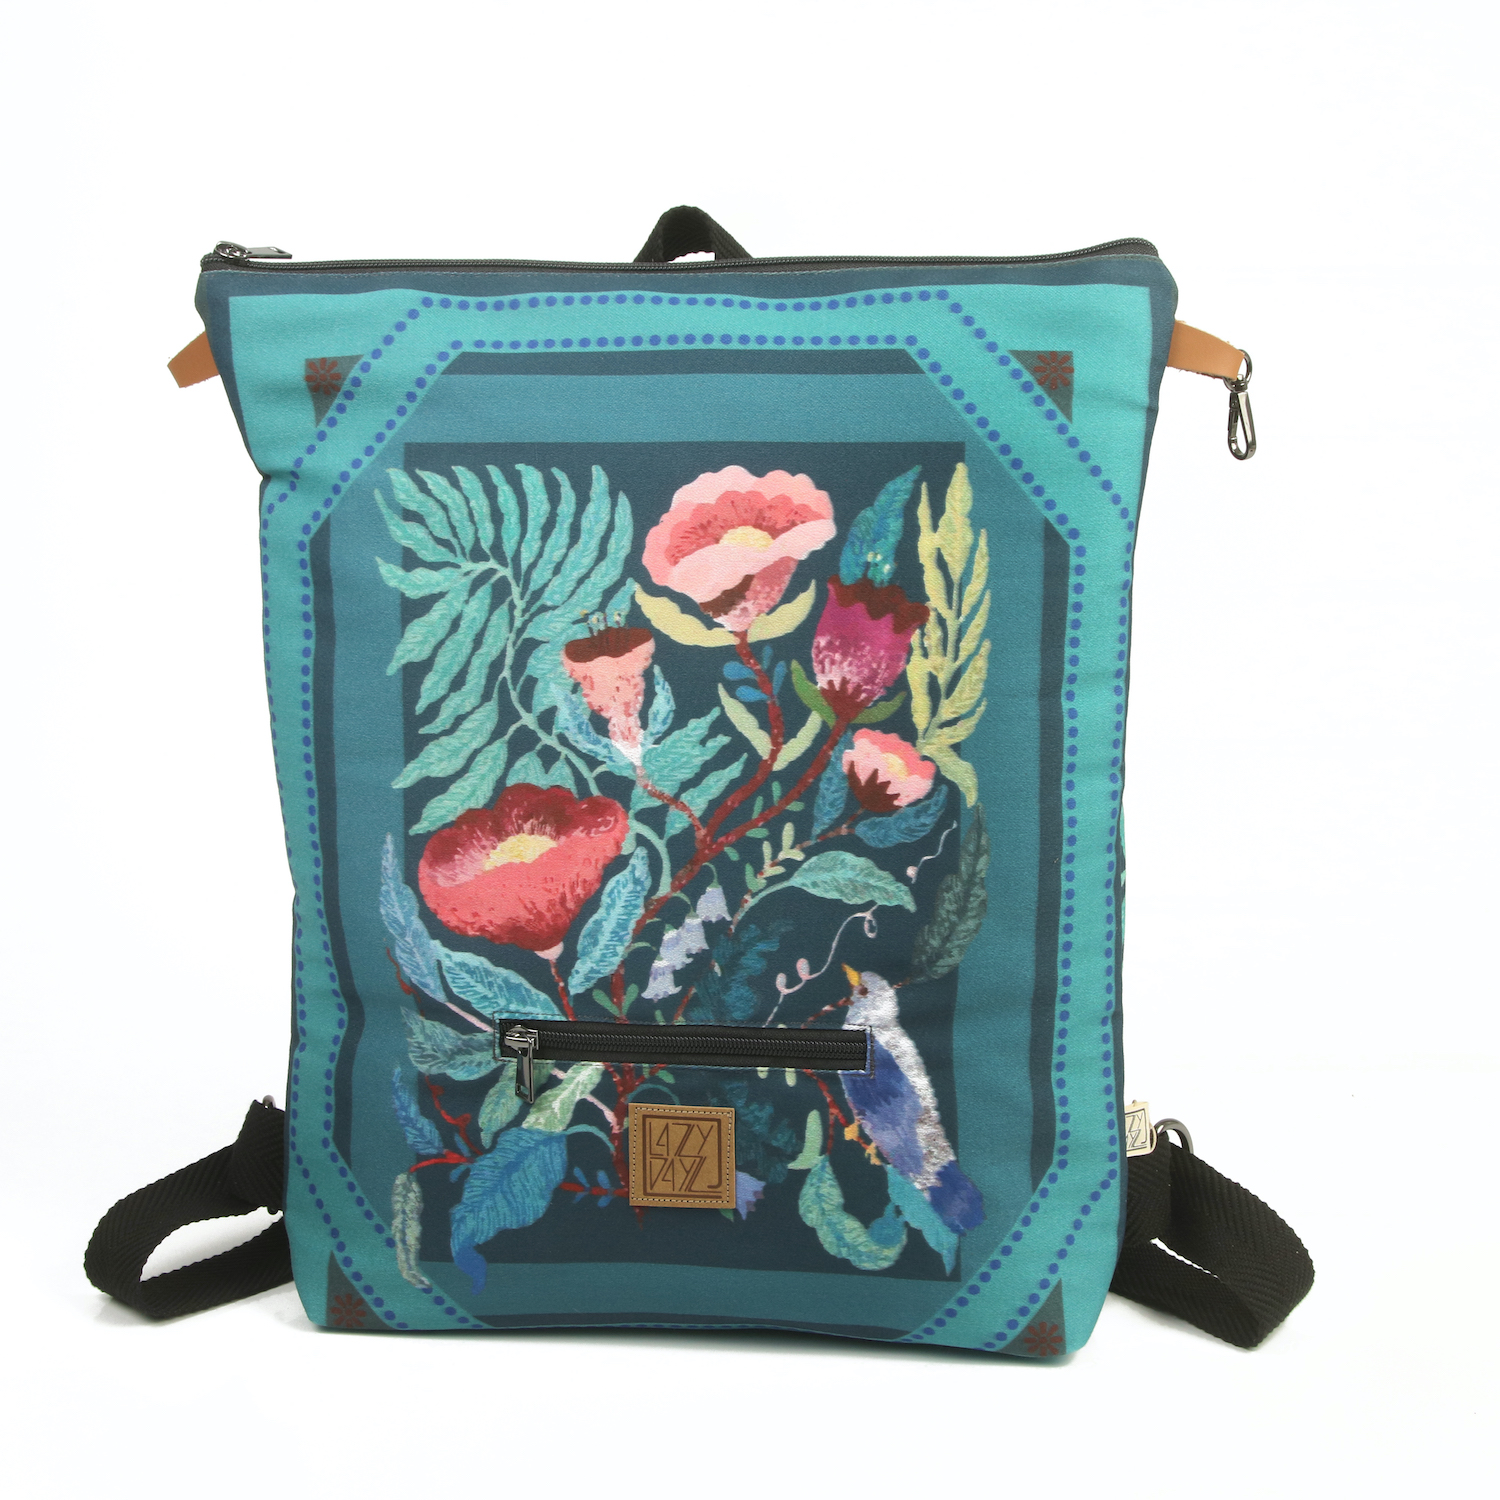 LazyDayz Designs Backpack γυναικείος σάκος πλάτης χειροποίητος bb0508